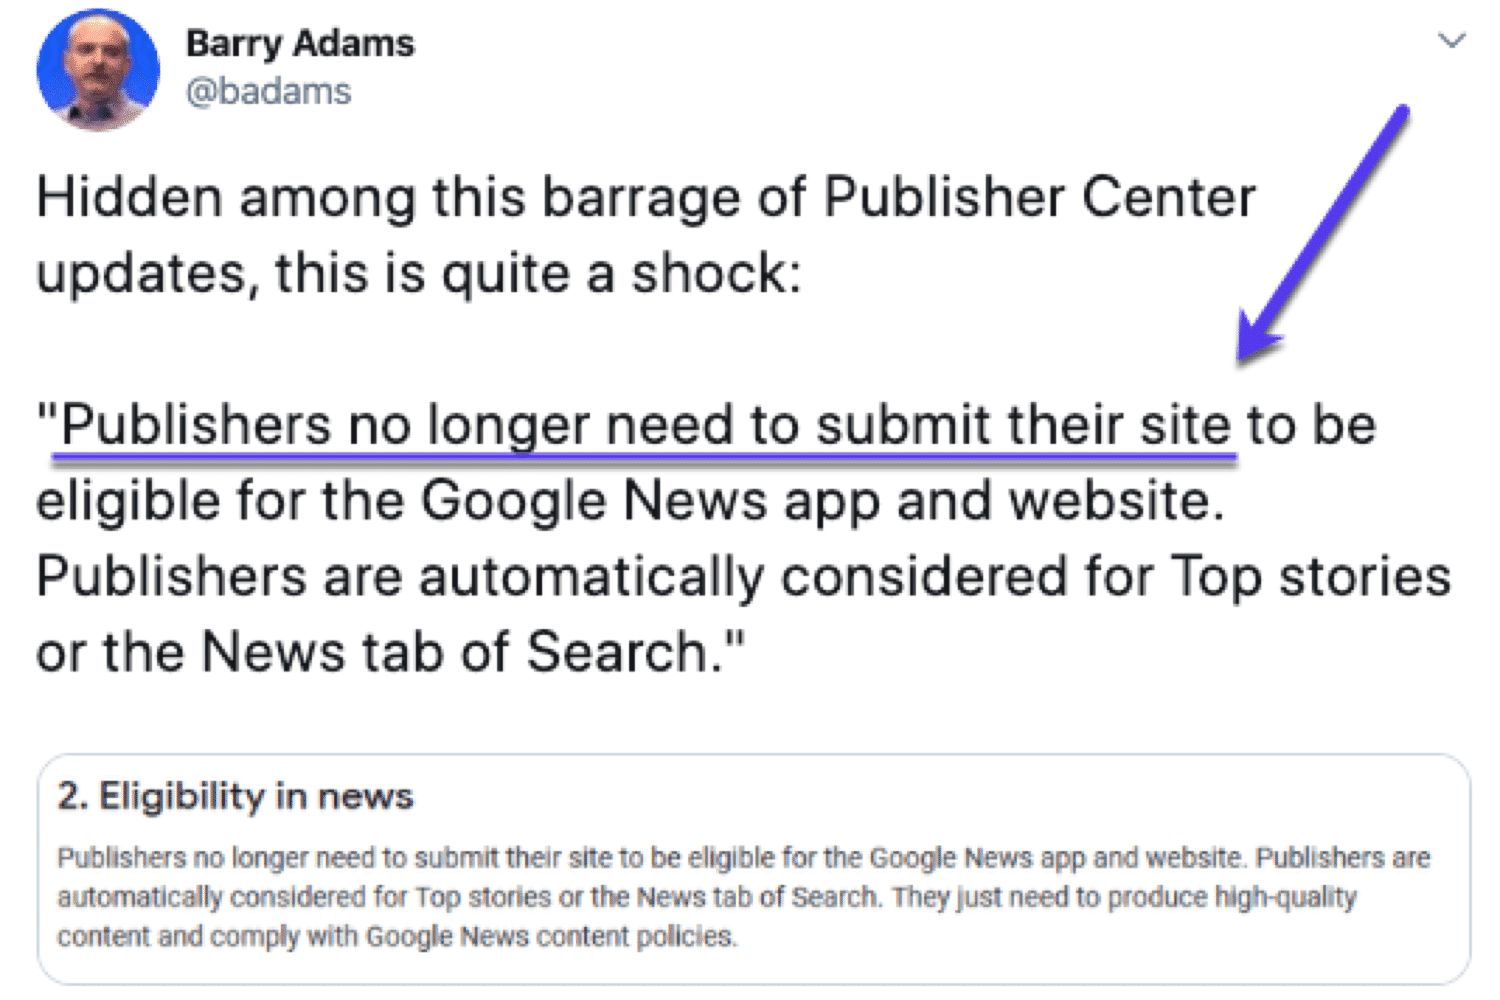 Barry Adams a constaté que les éditeurs n'ont pas besoin de soumettre leurs sites